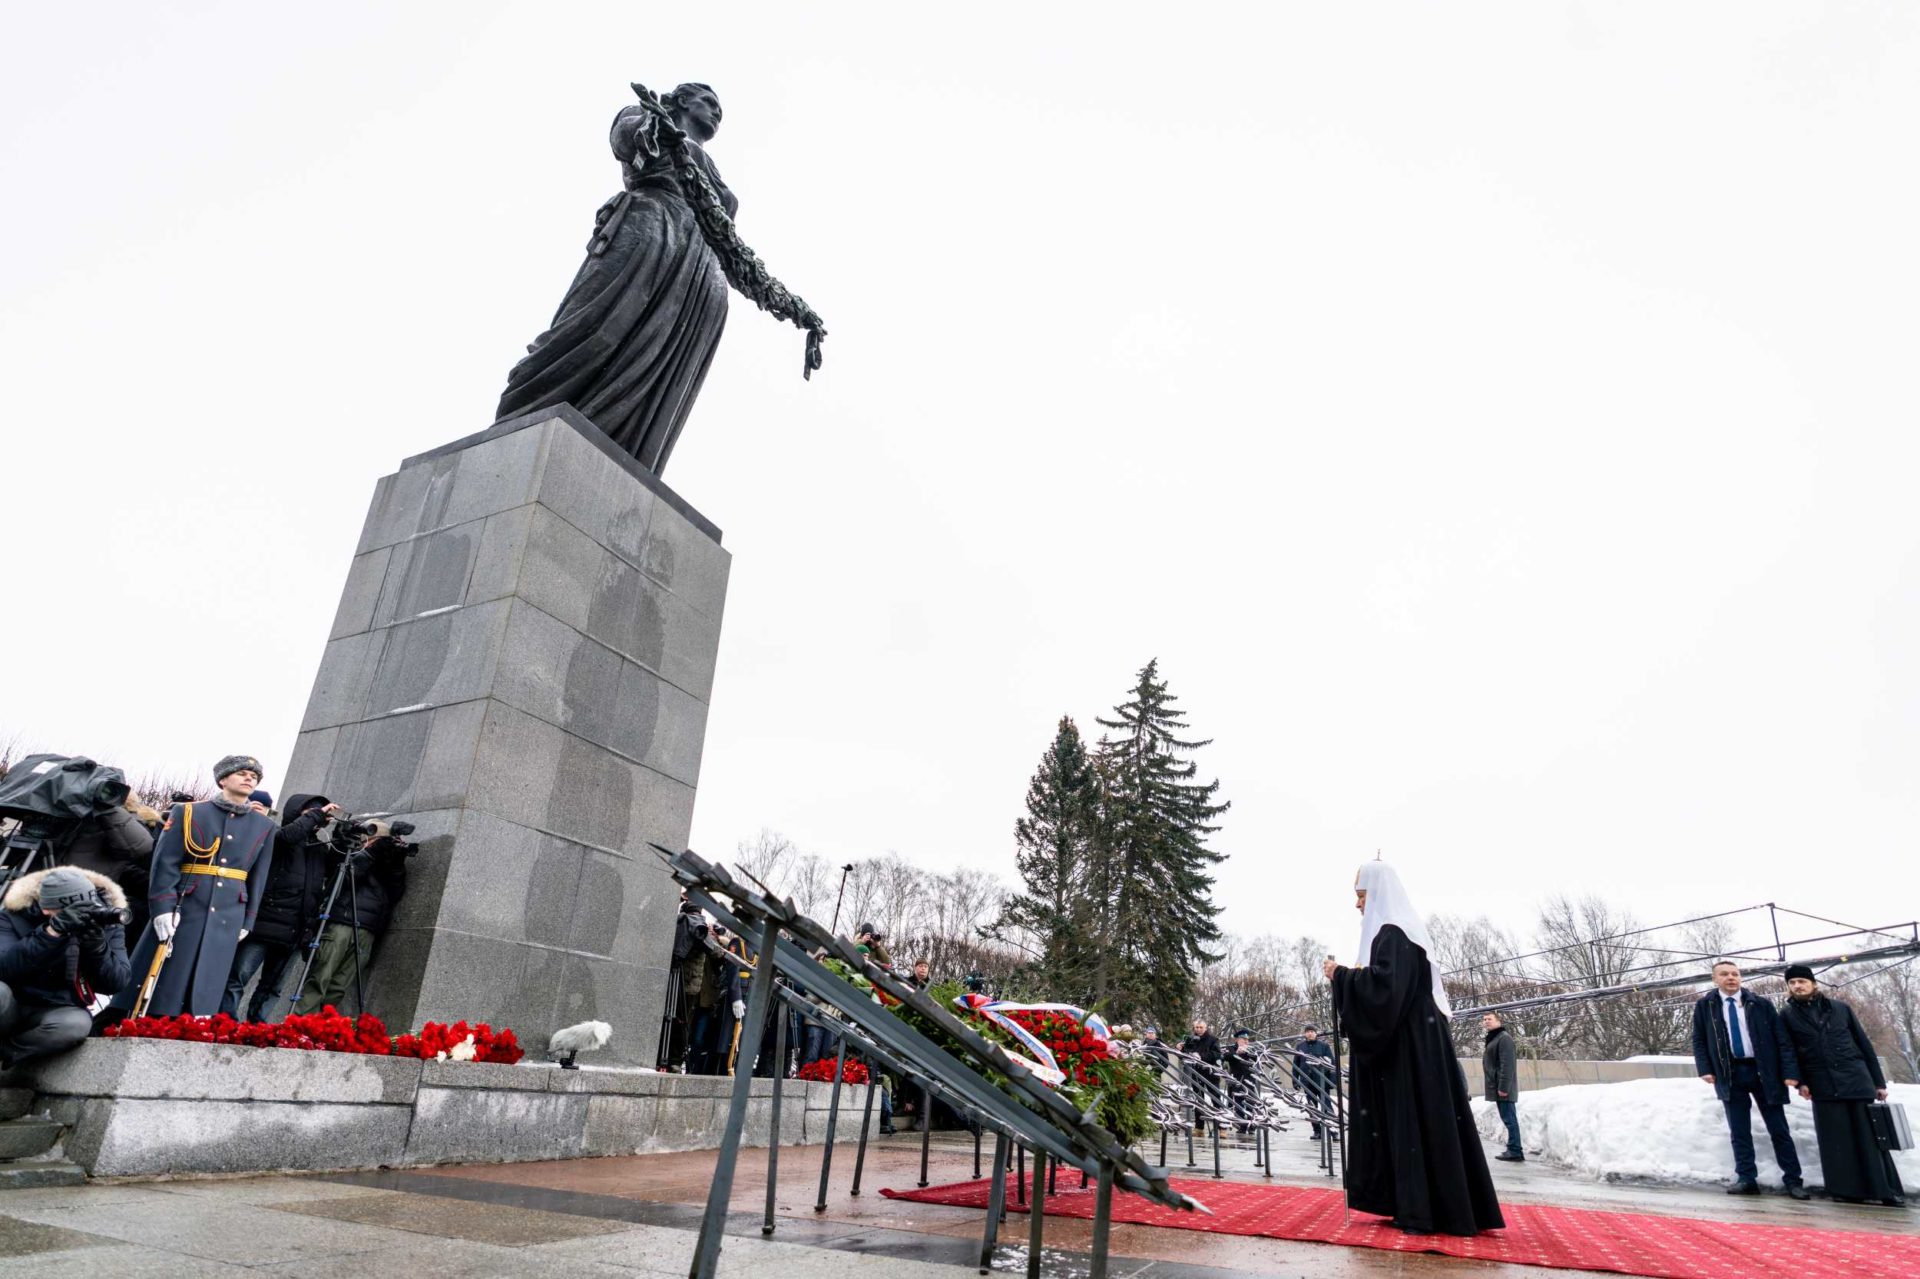 В 80-ю годовщину полного освобождения Ленинграда от фашистской блокады Святейший Патриарх Кирилл принял участие в торжественно-траурной церемонии на Пискаревском кладбище Санкт-Петербурга